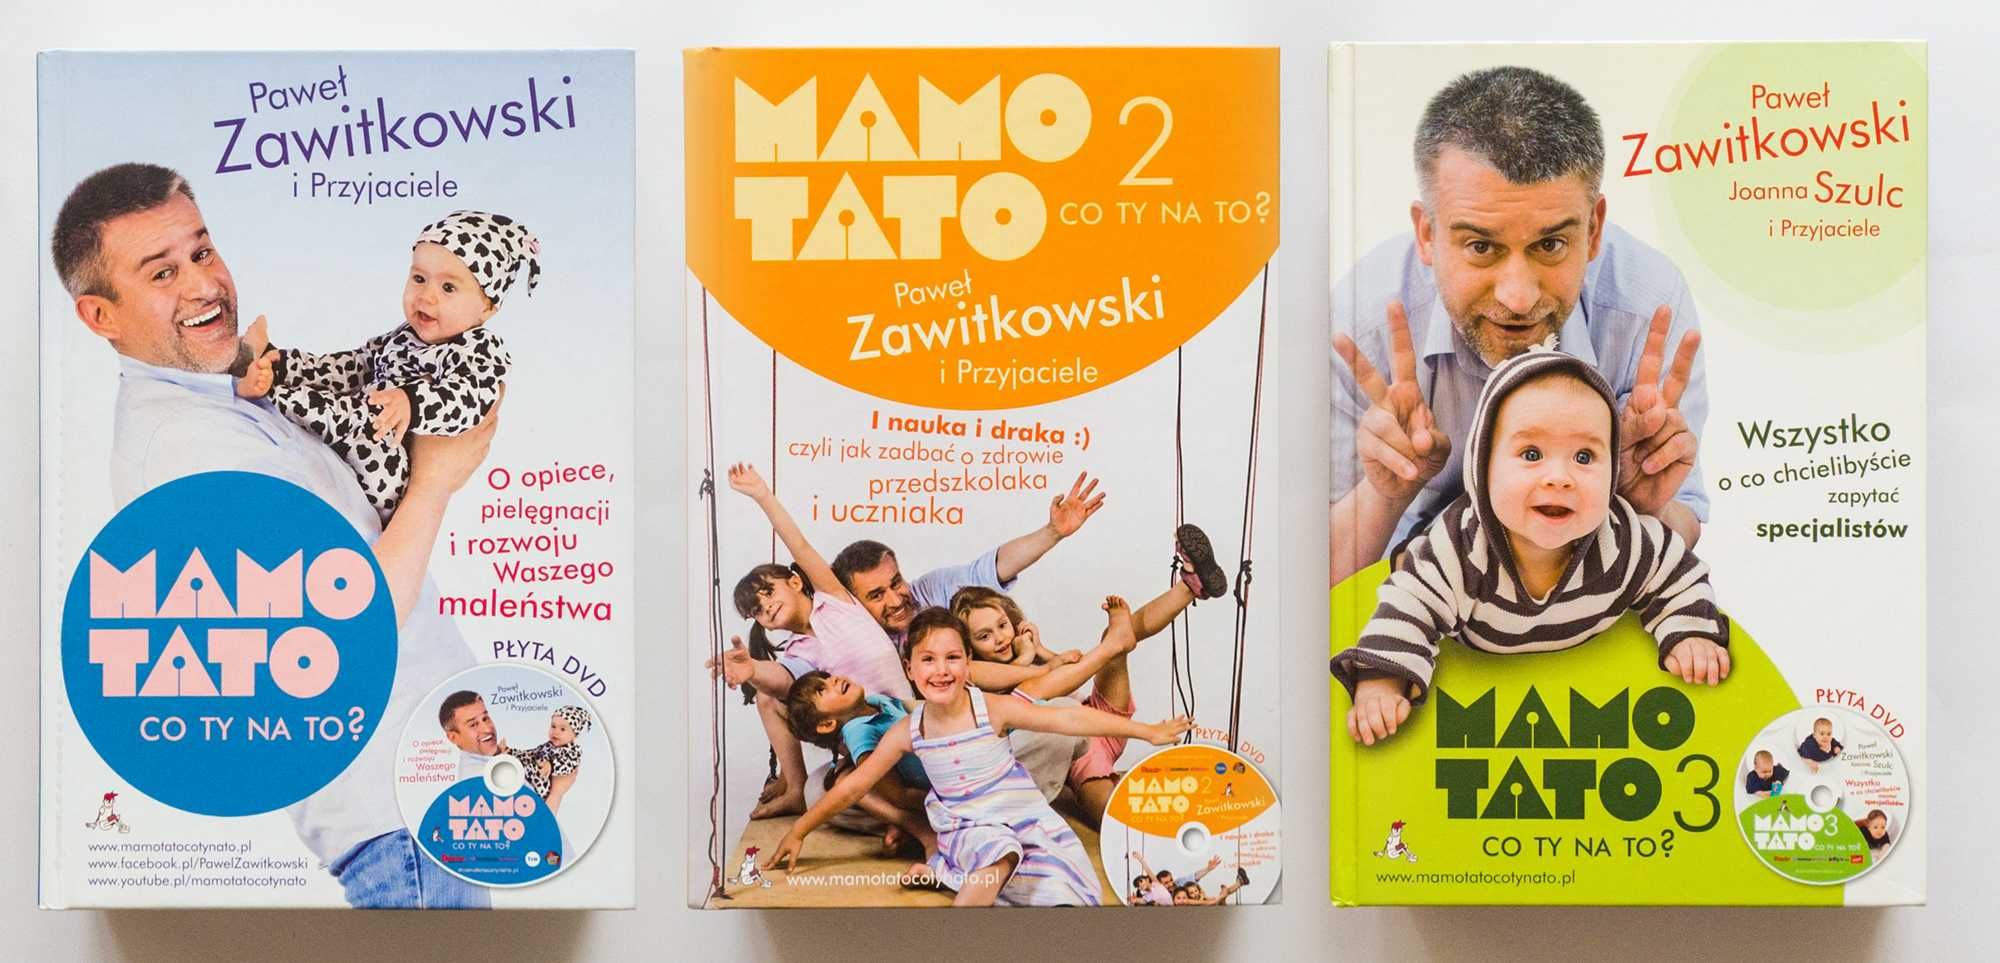 Mamo, tato, co ty na to?, Paweł Zawitkowski, komplet 3 części z DVD